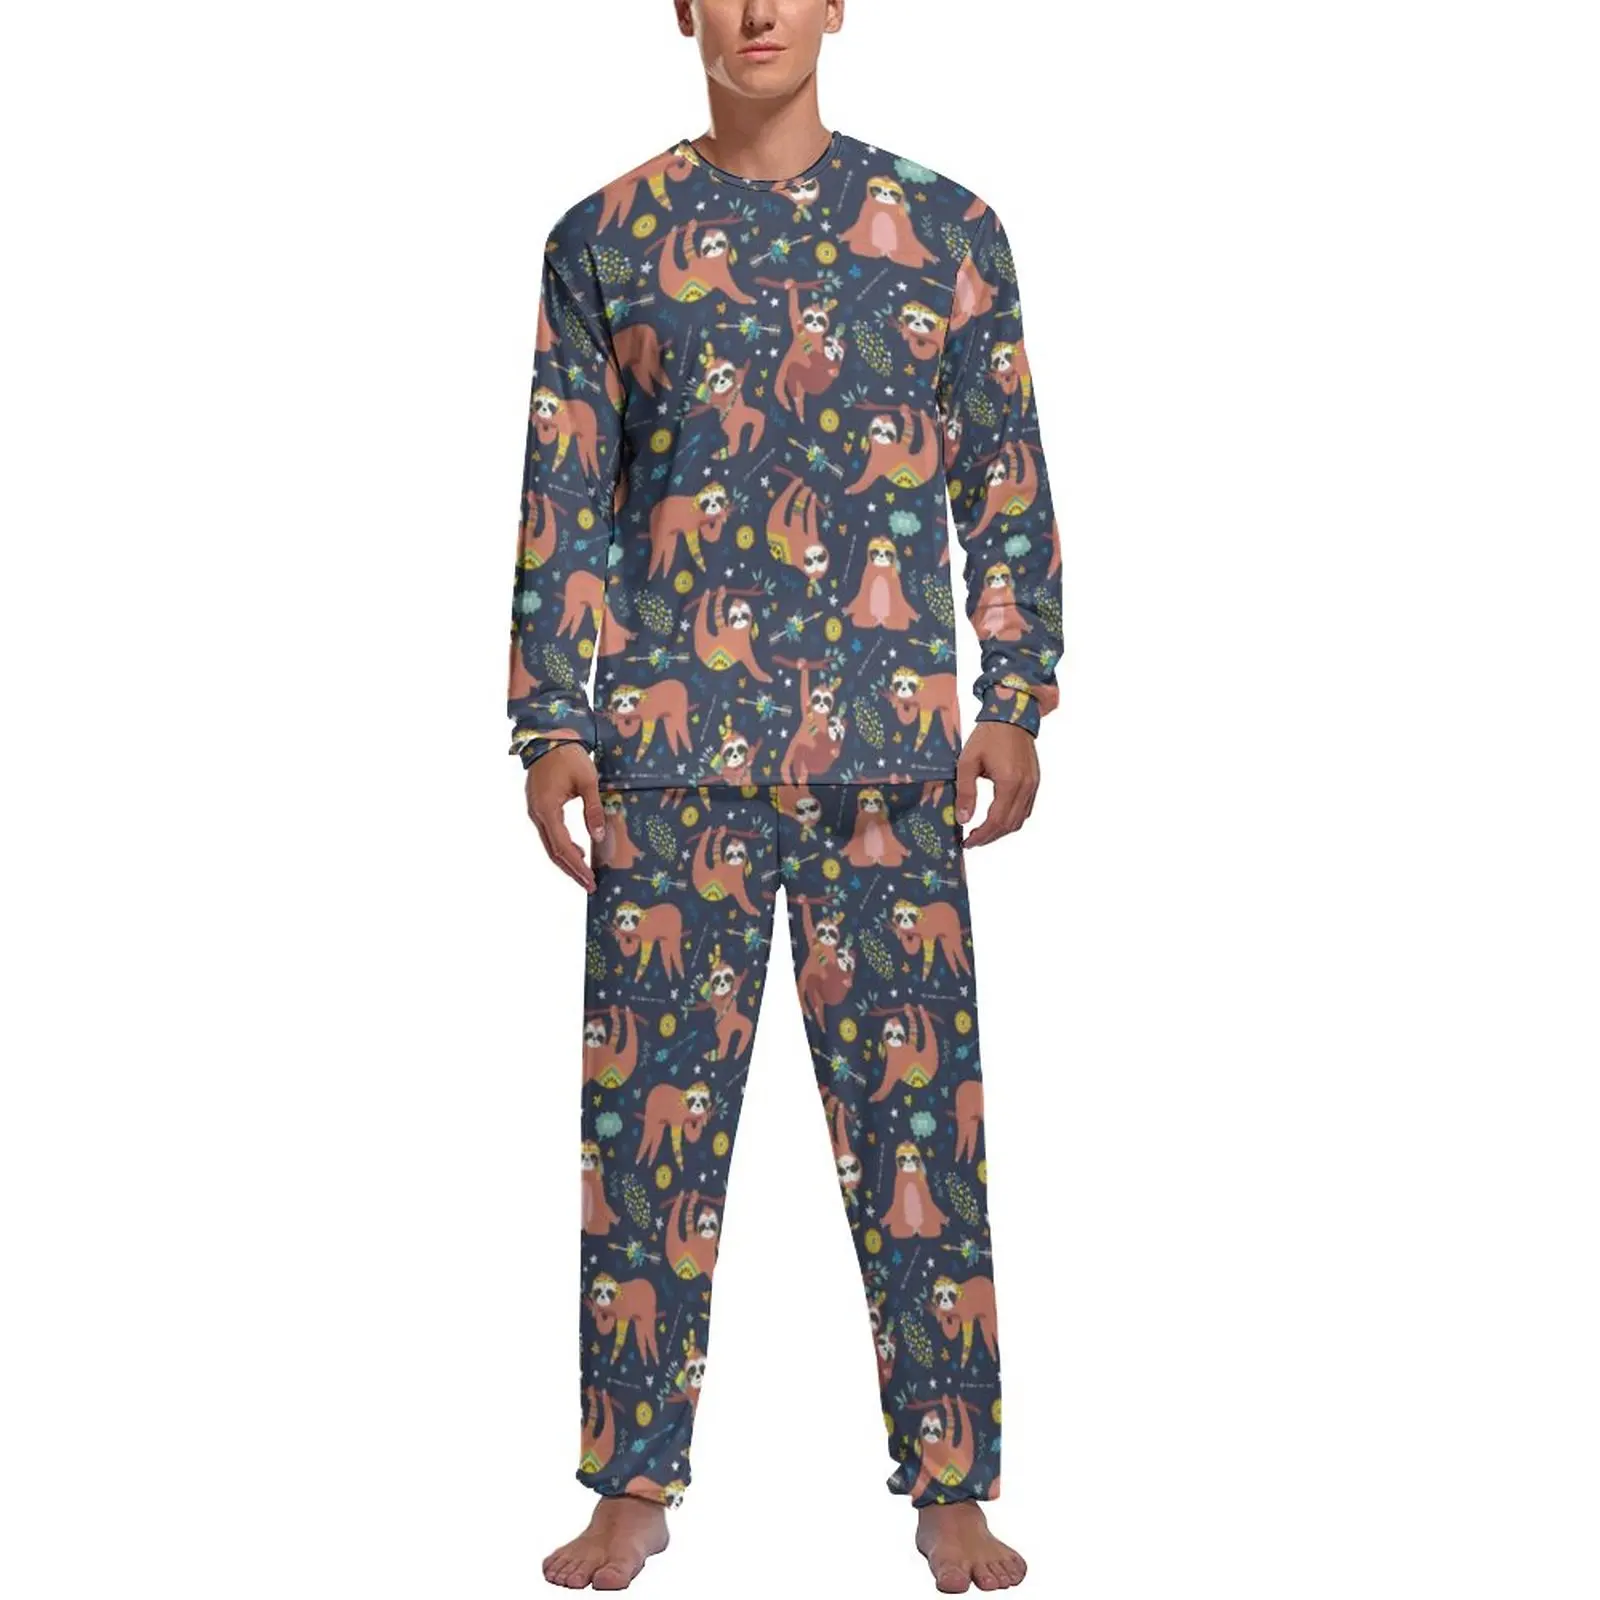 Animal Print Pajamas Male Cute Sloth Soft Nightwear Autumn Long Sleeves 2 Piece Aesthetic Printed Pajamas Set